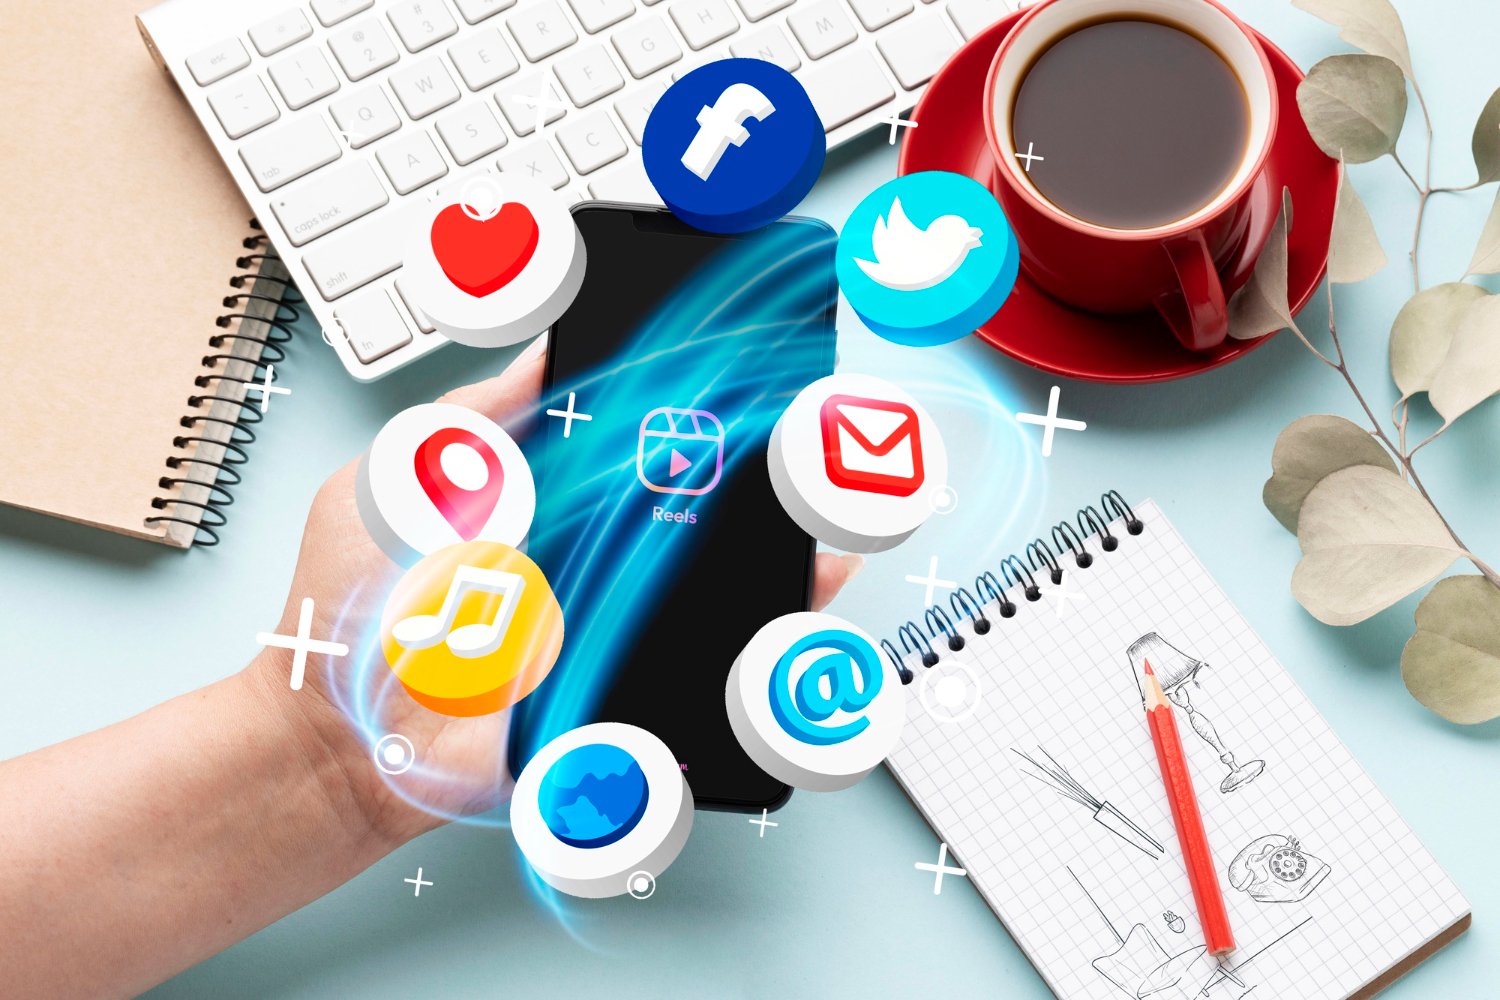 Digital Marketing on Social Media